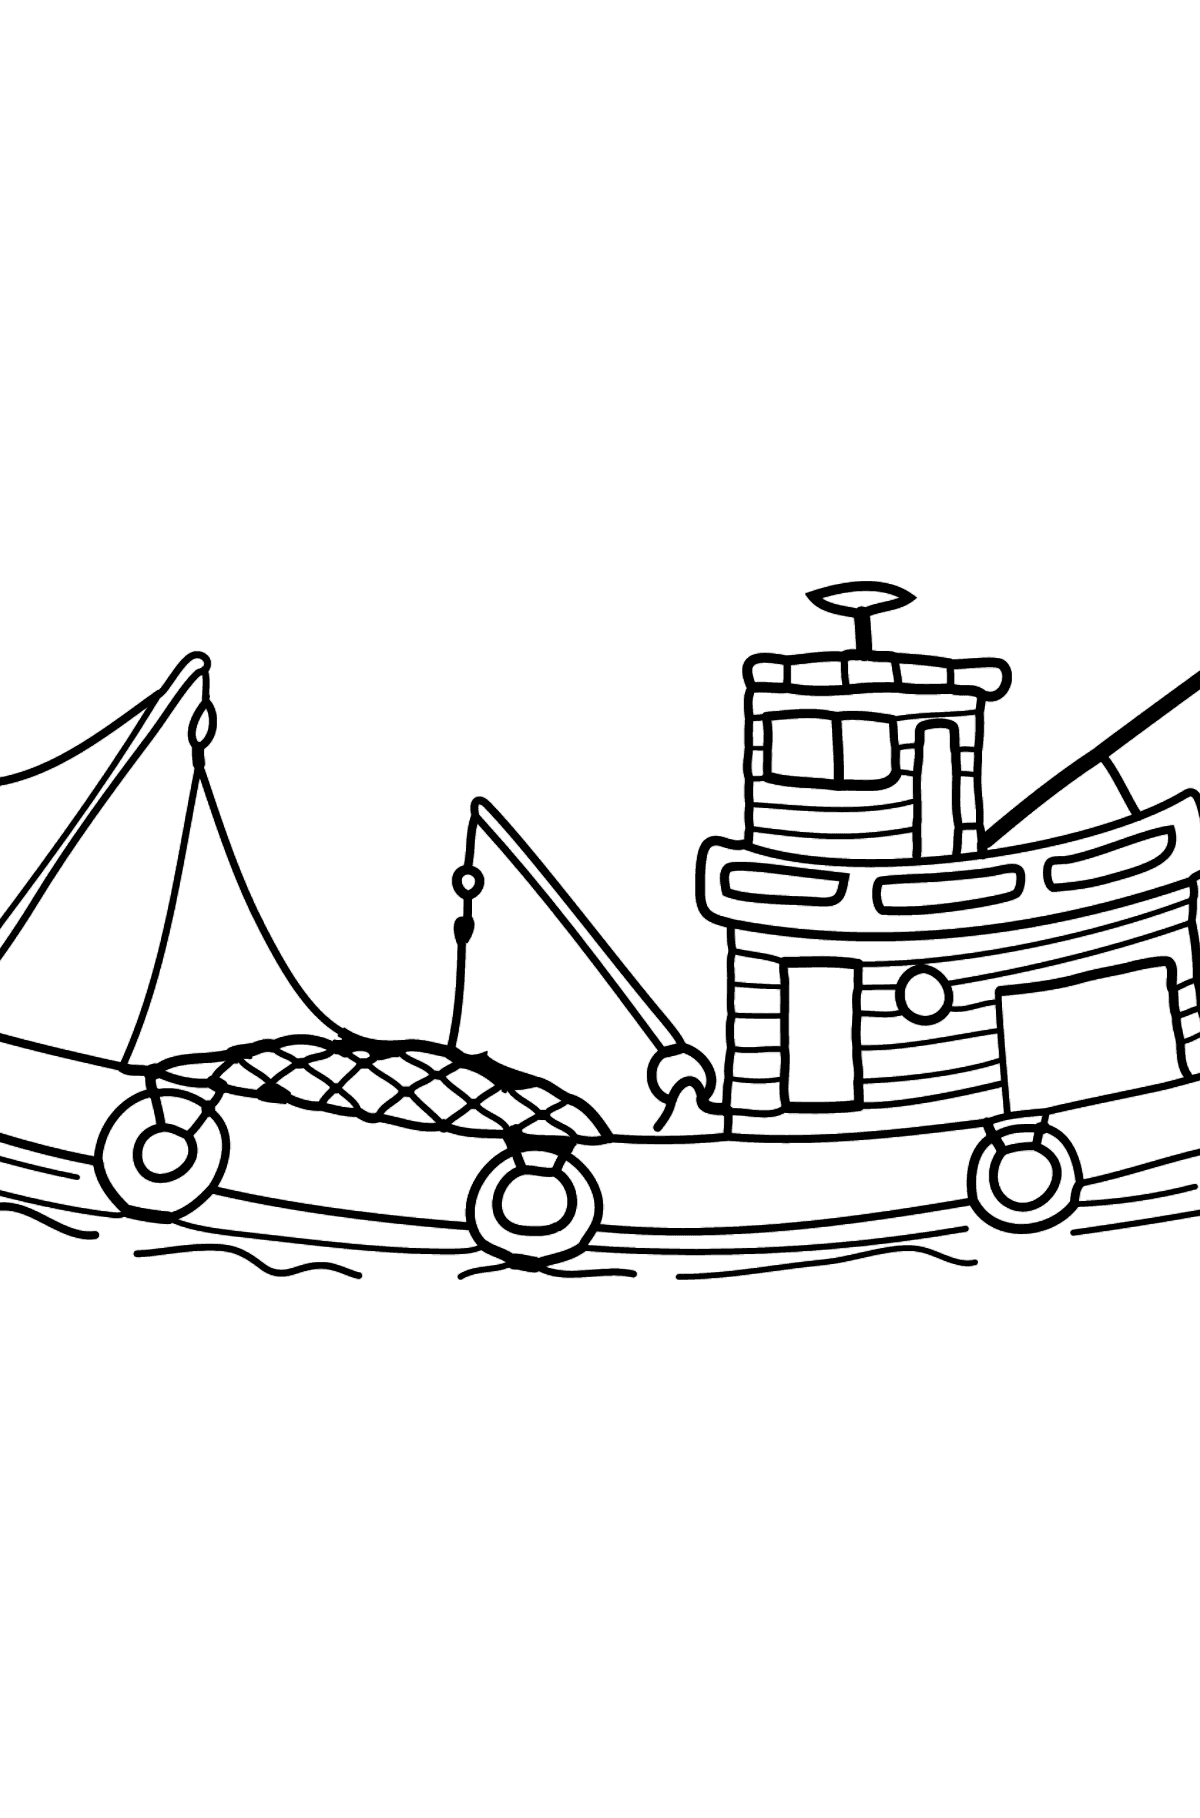 Boyama sayfası balıkçı teknesi - Boyamalar çocuklar için